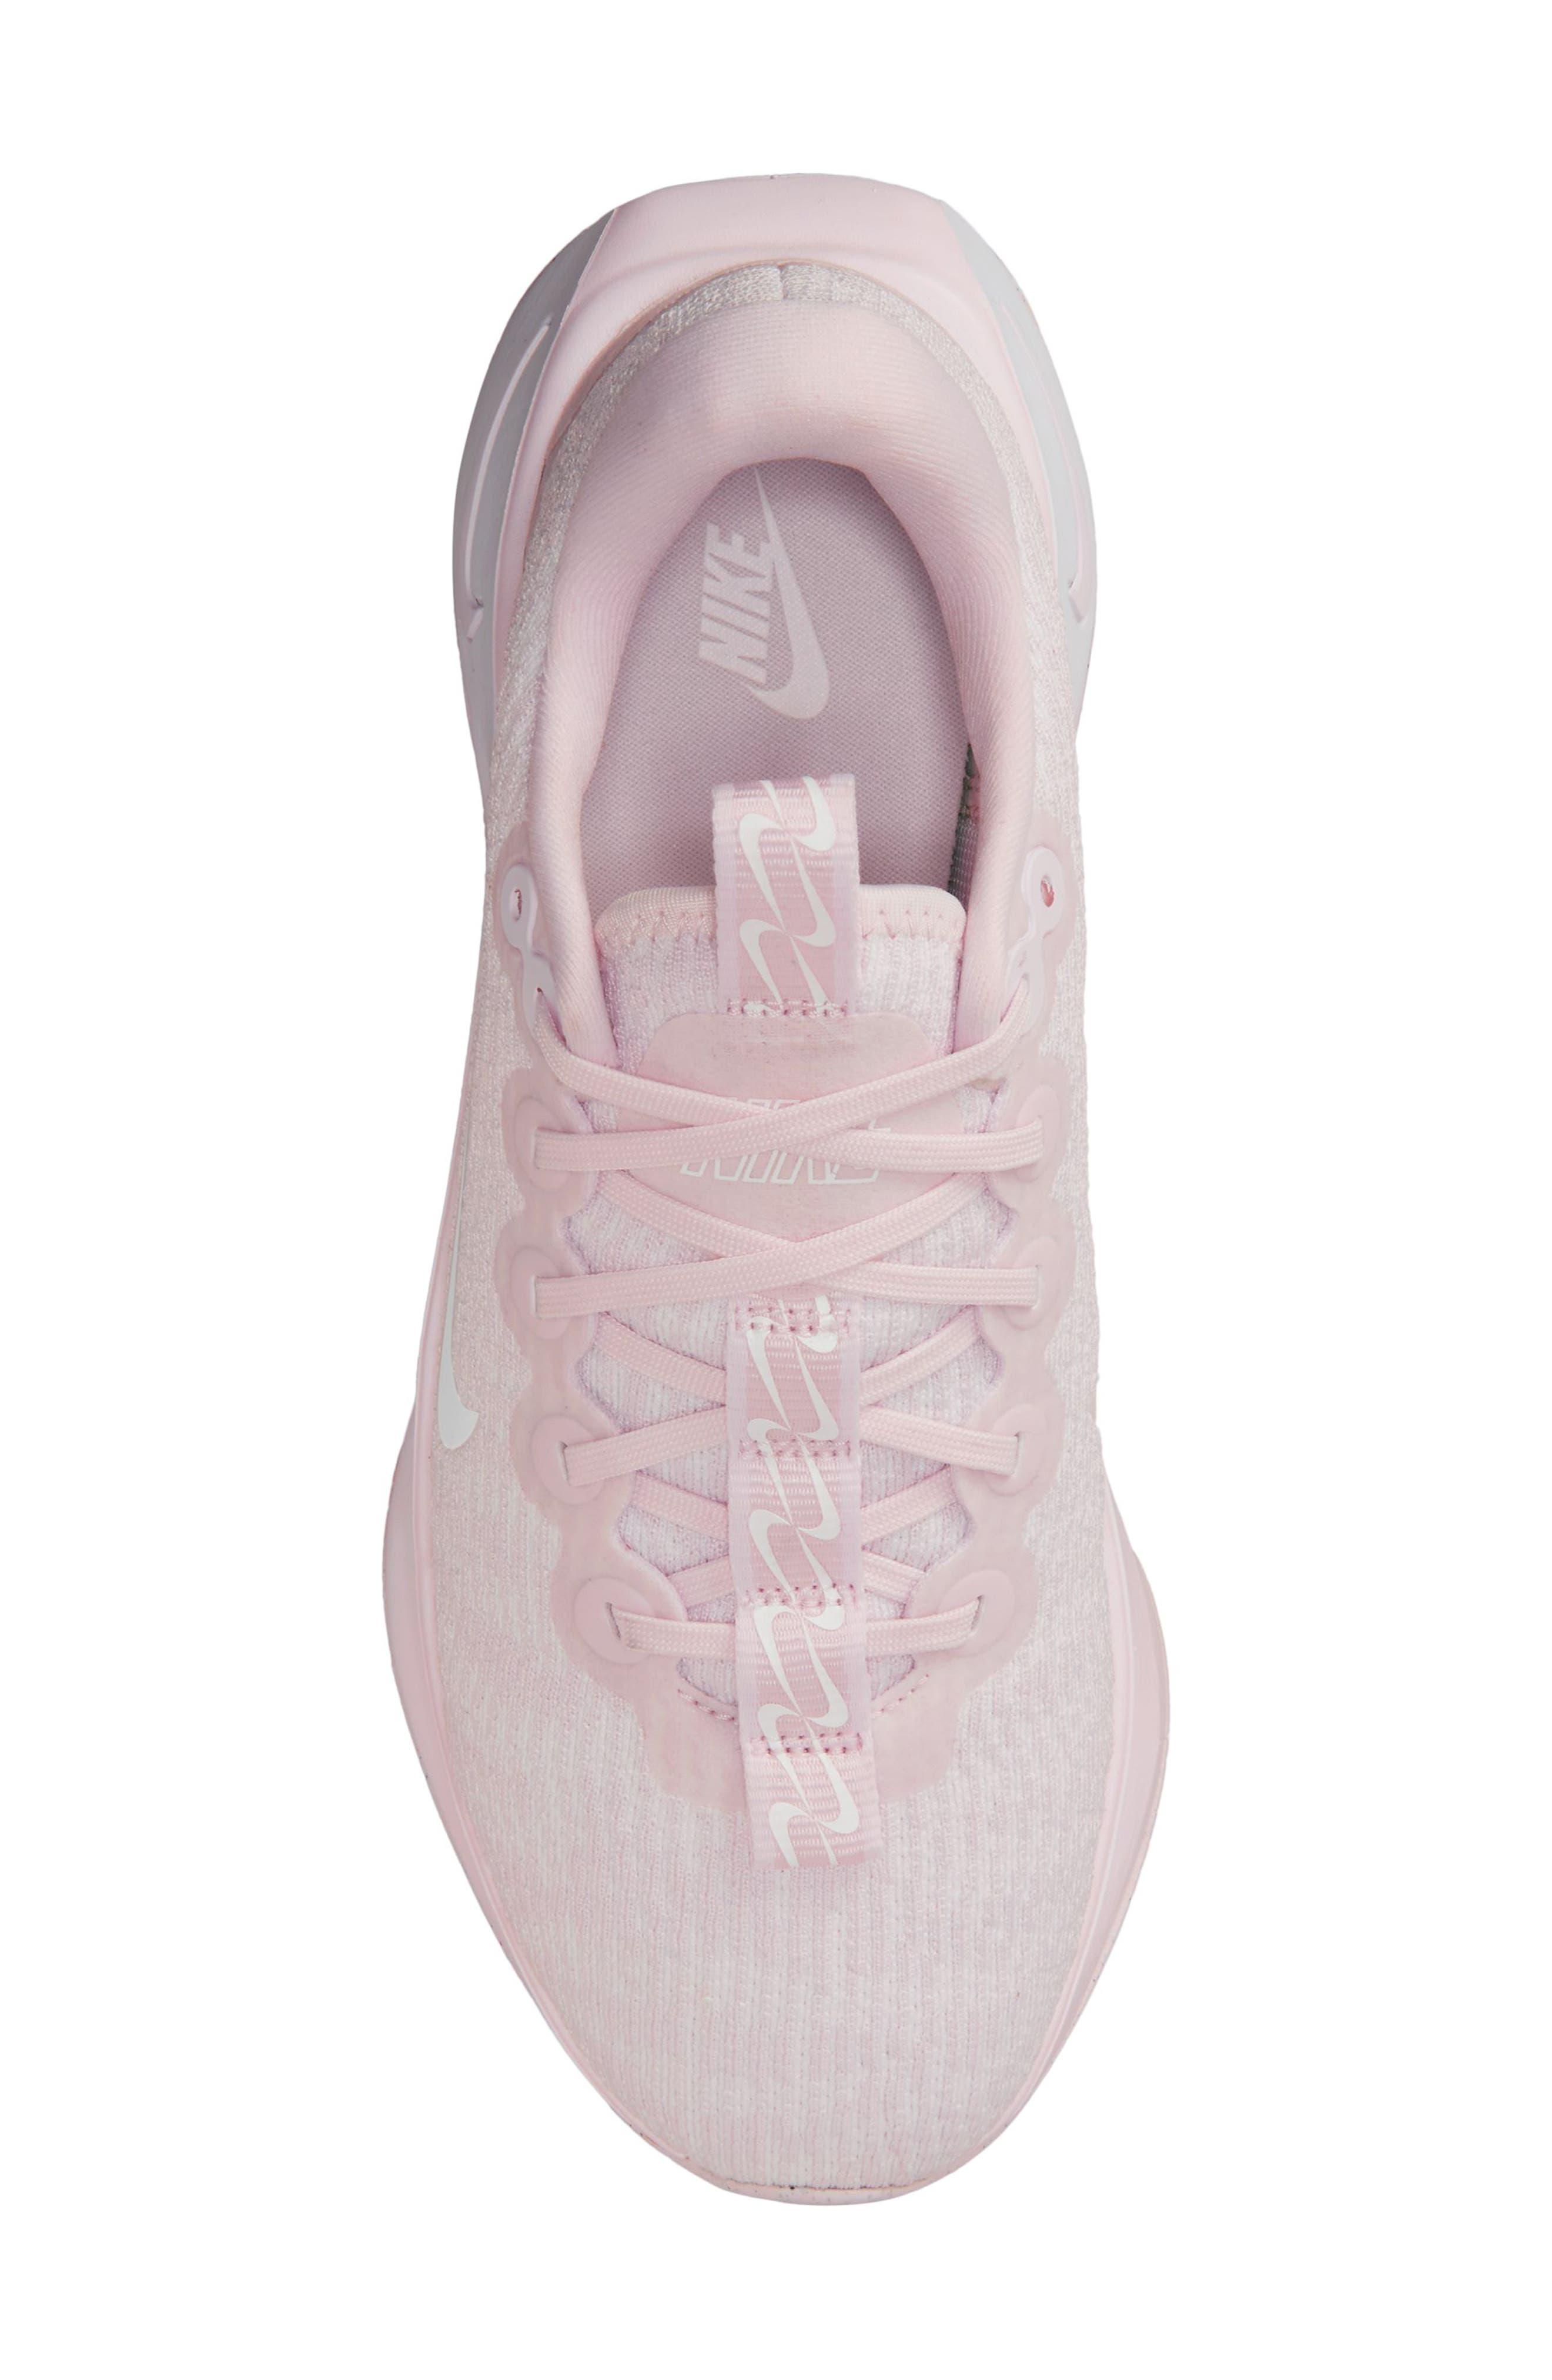 Nike Motiva Road Runner Walking Shoe in Pink | Lyst